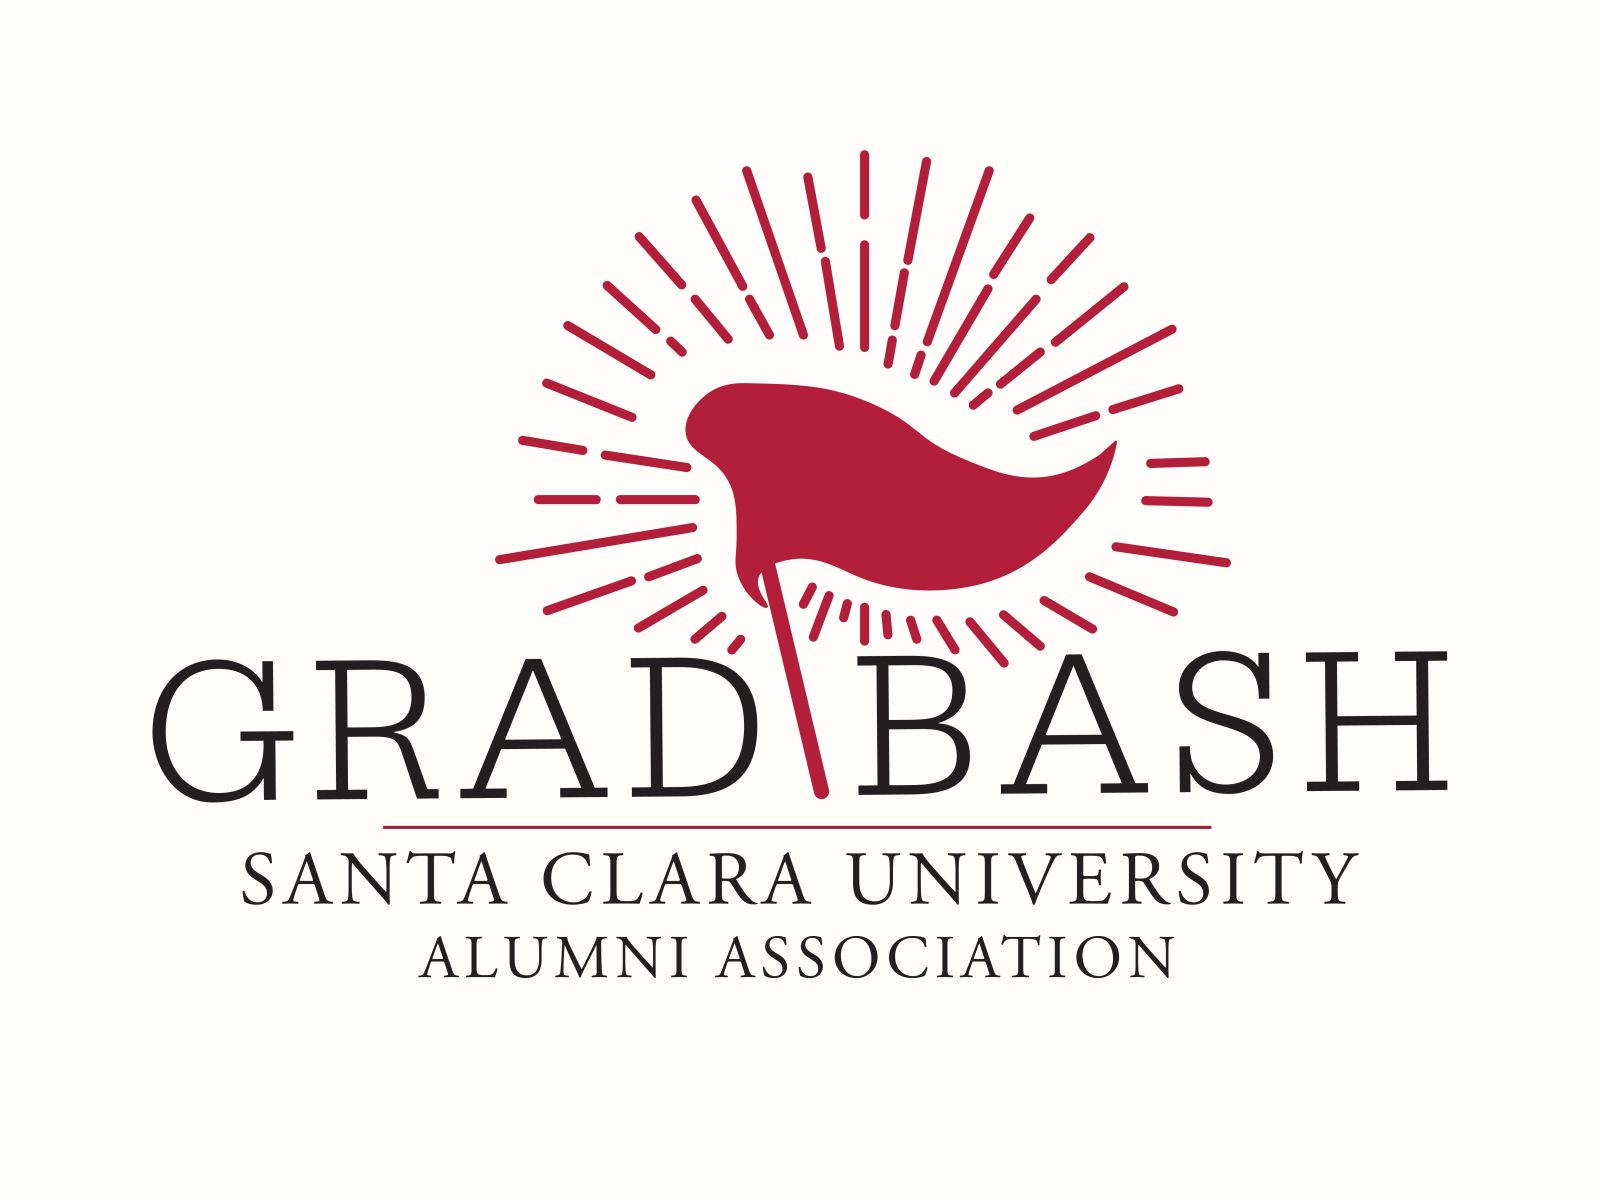 Grad Bash Logo by Blake Ferguson on Dribbble